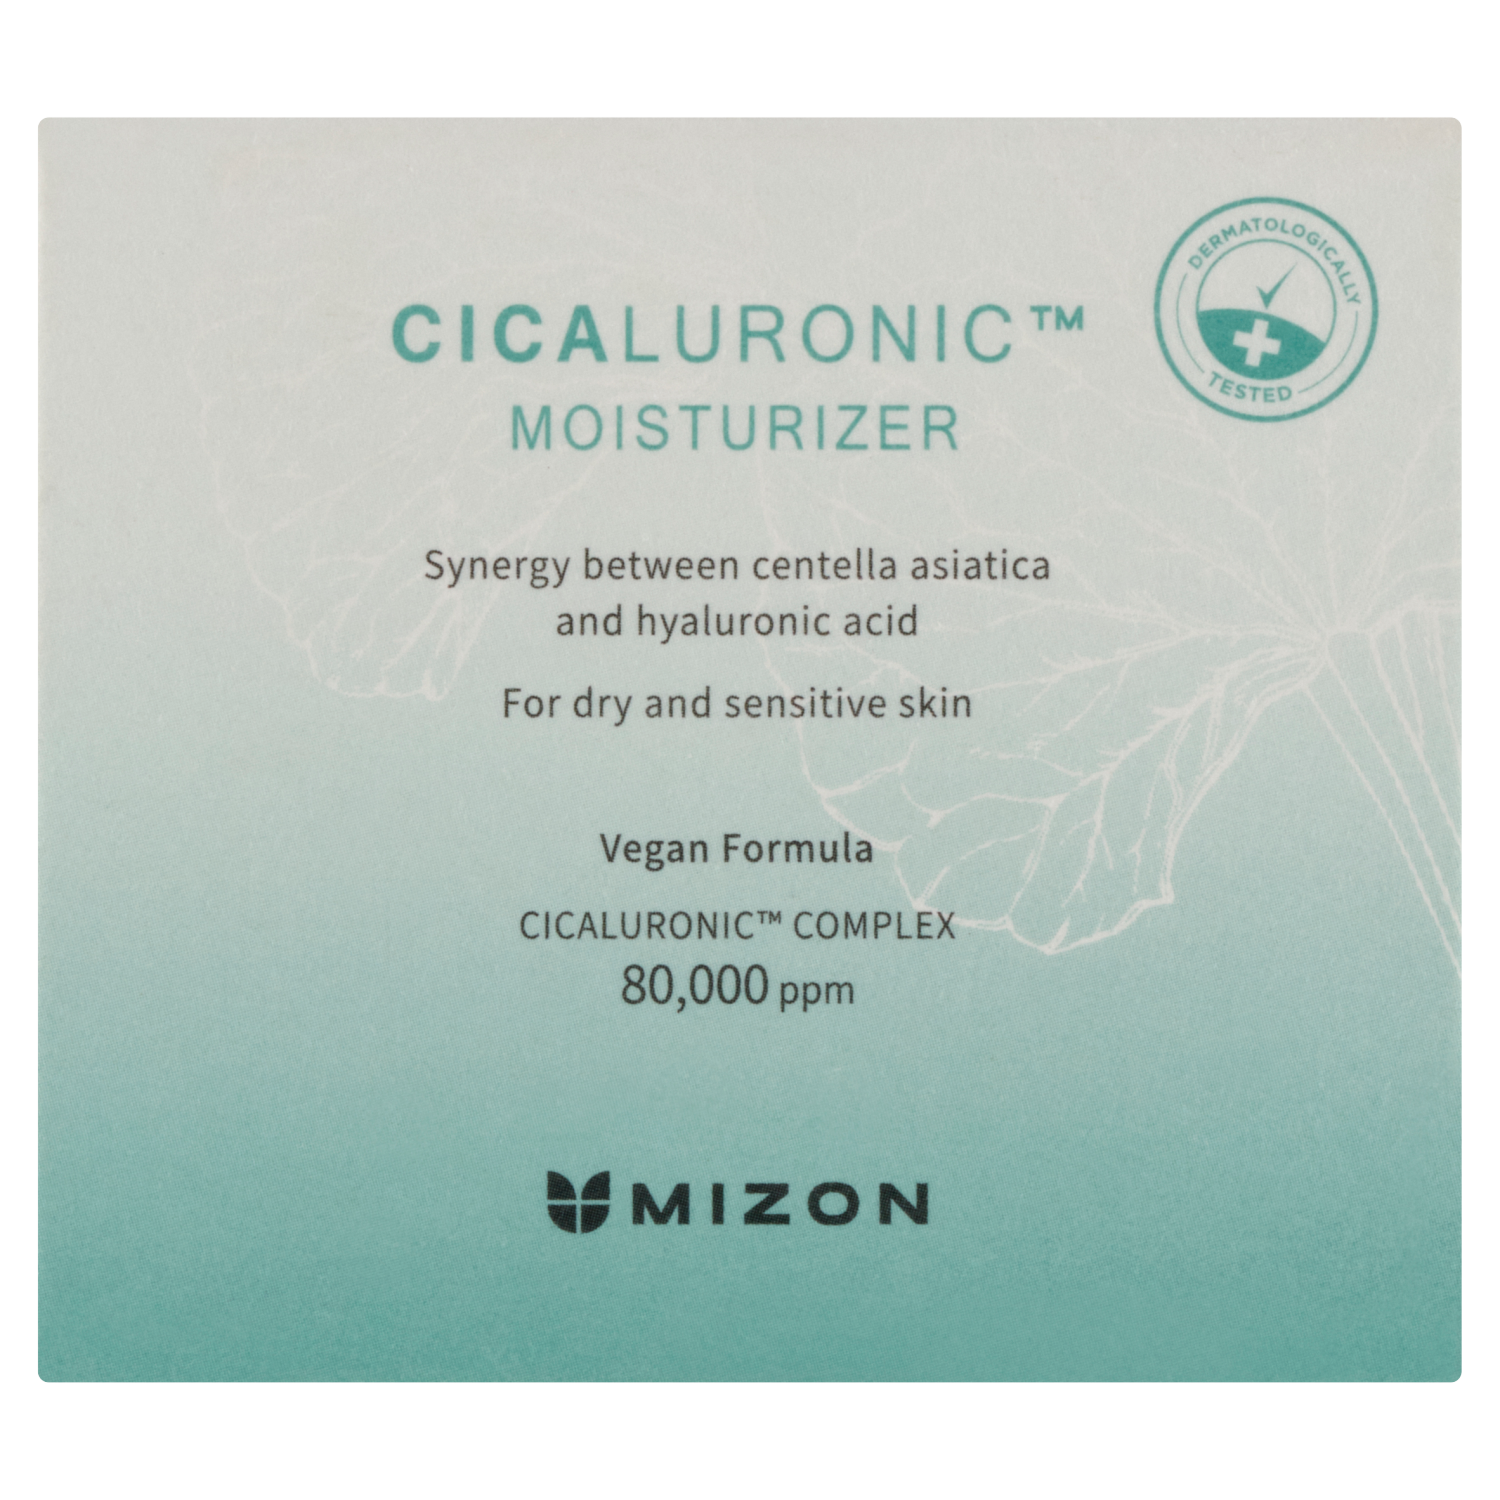 Увлажняющий и успокаивающий крем для лица Mizon, 50 мл набор сыворотка крем маска для лица mizon cicaluronic calming set of 3 3 шт